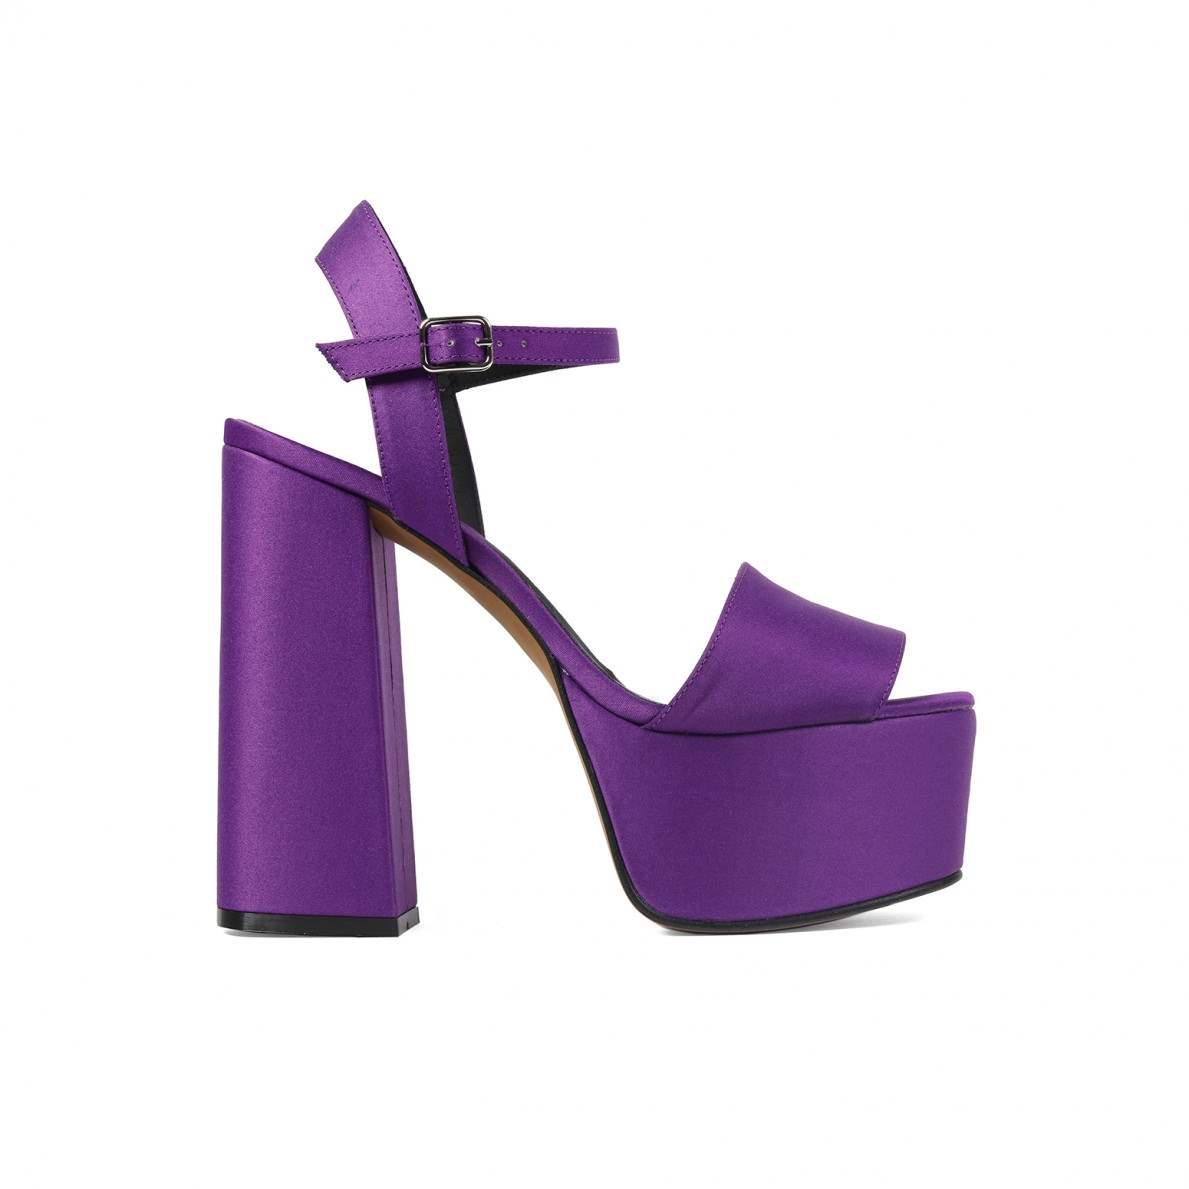 Sandalia violeta con plataforma alta